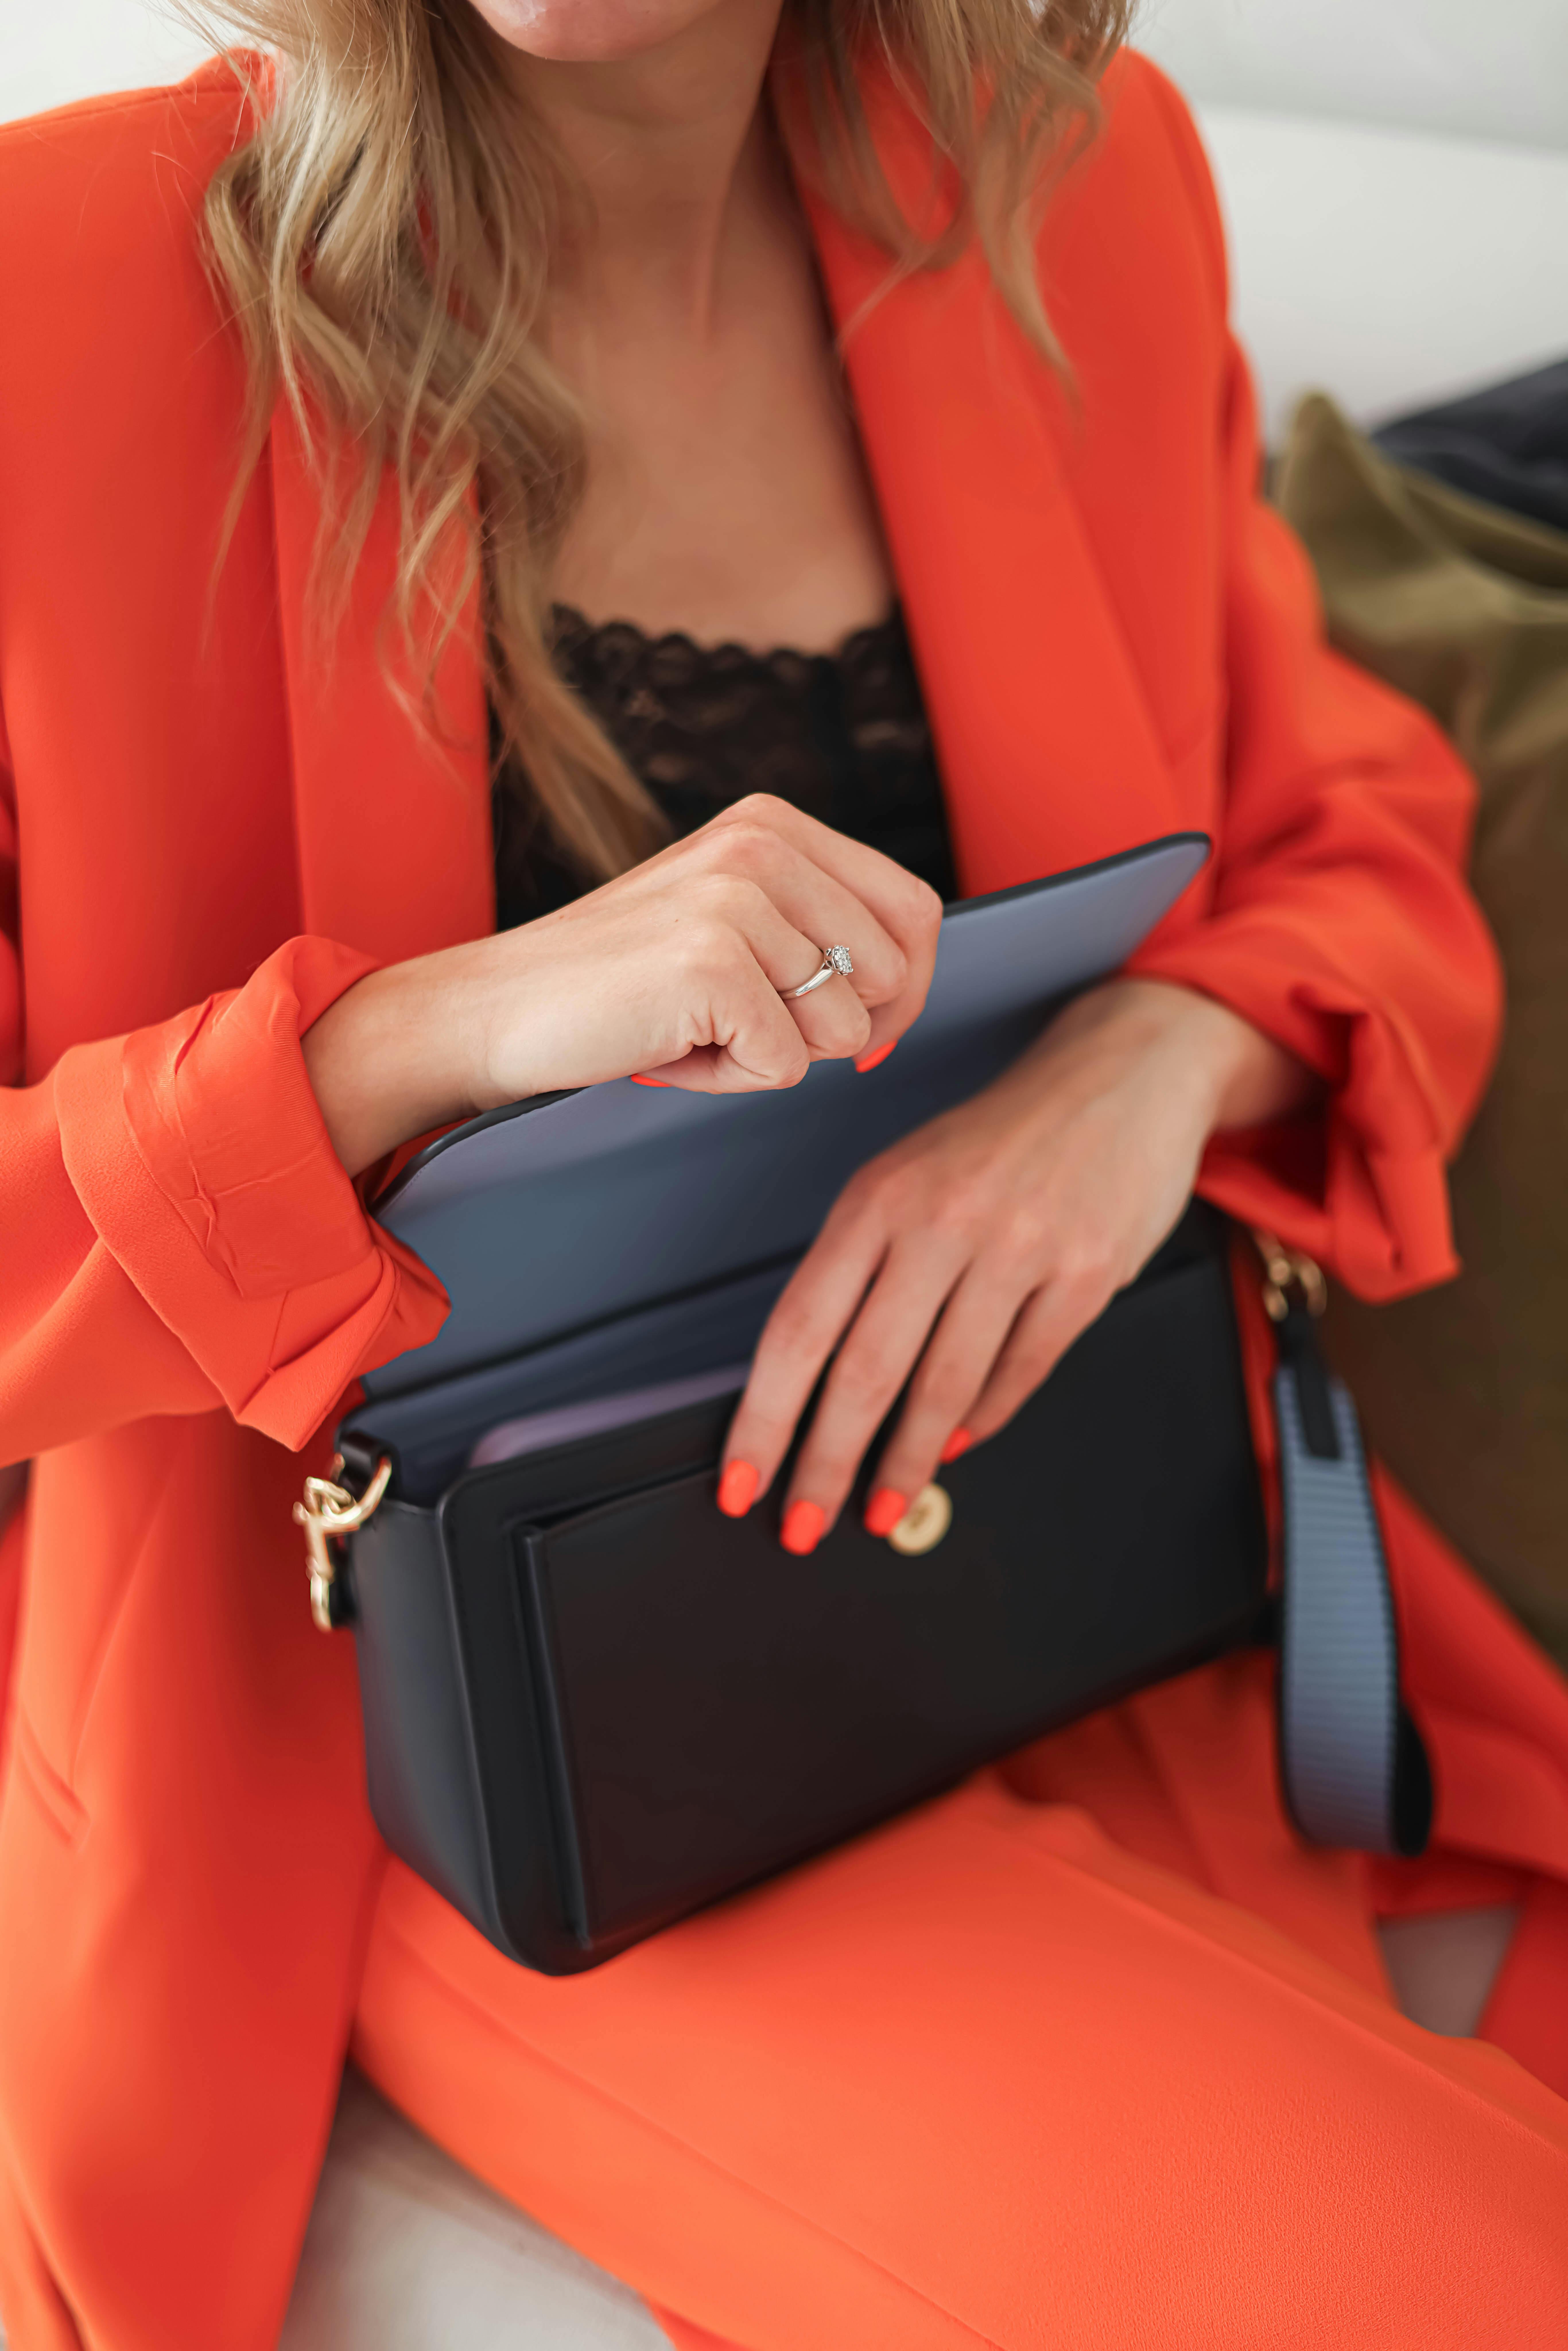 15 Best Orange Outfit Ideas for Women to Wear in 2022